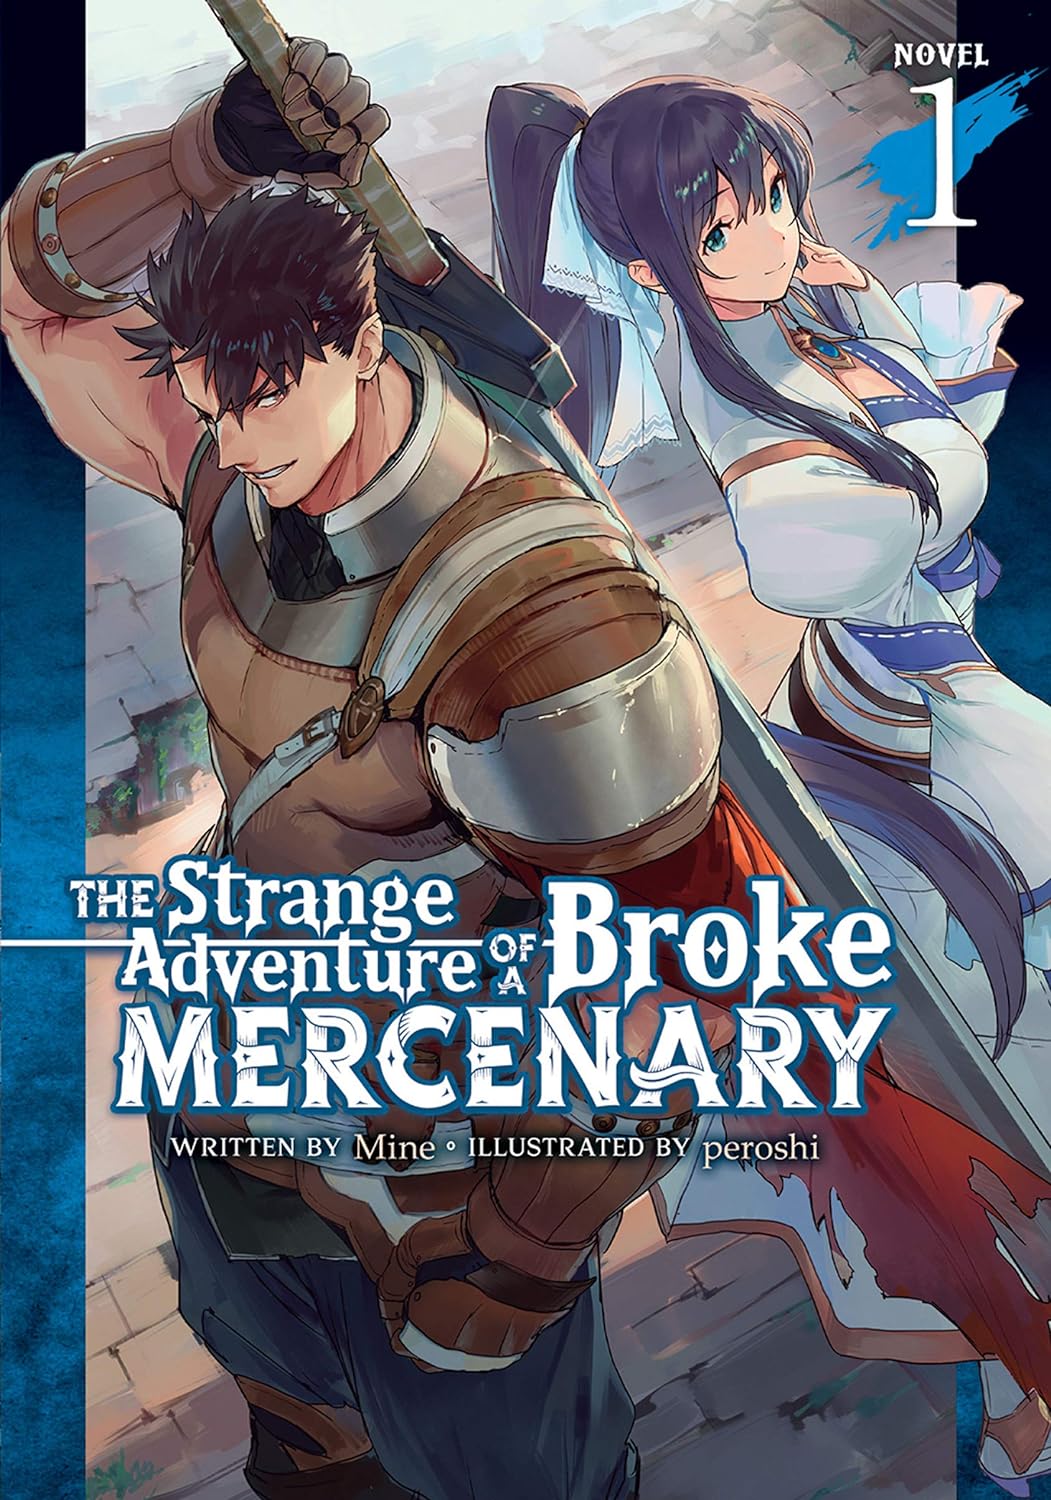 The Strange Adventure of a Broke Mercenary (Light Novel)